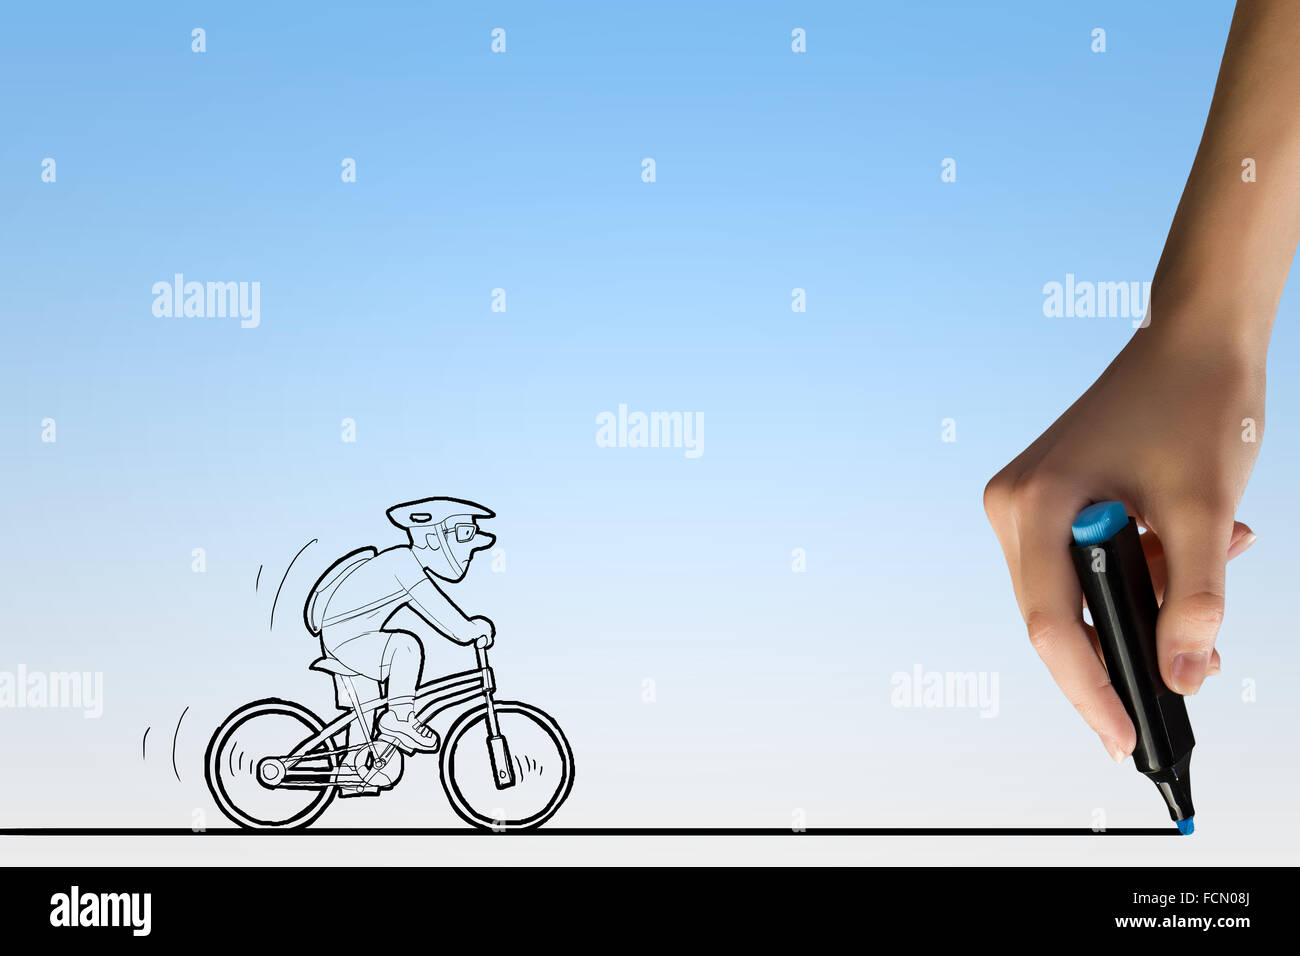 Caricature de l'homme et des droits de l'riding bike dessin à la main line Banque D'Images